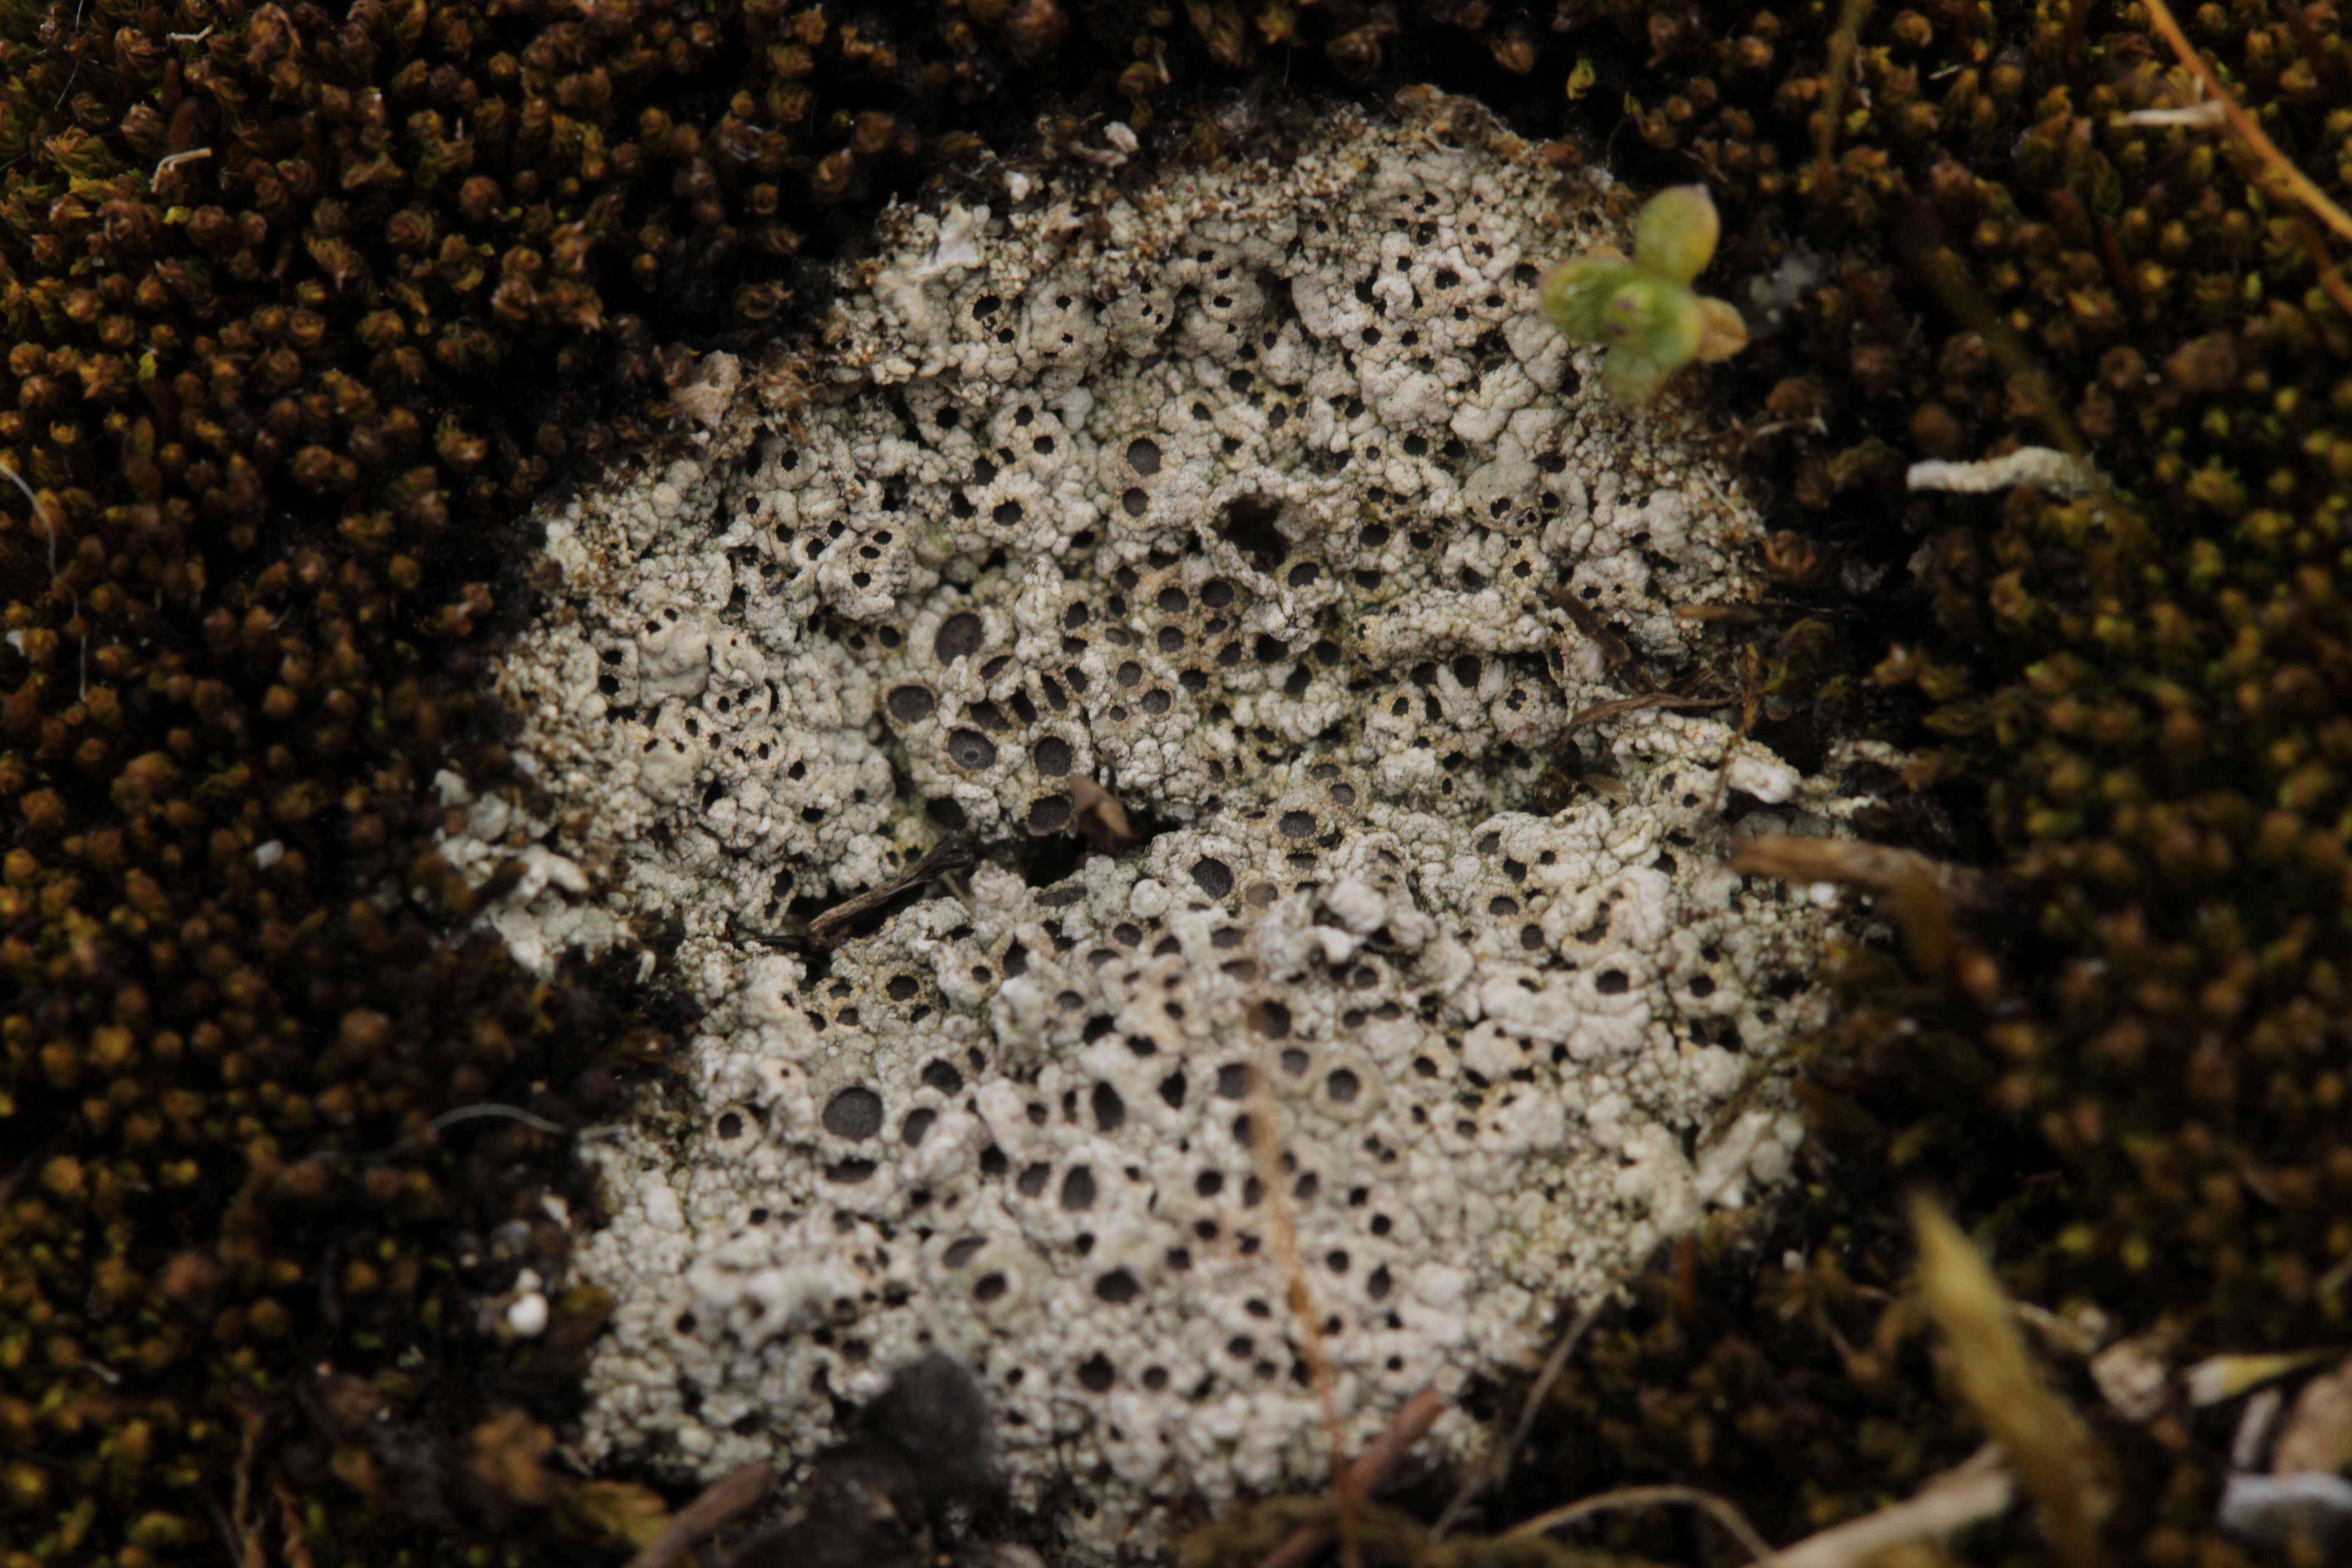 Image of Cow pie lichen